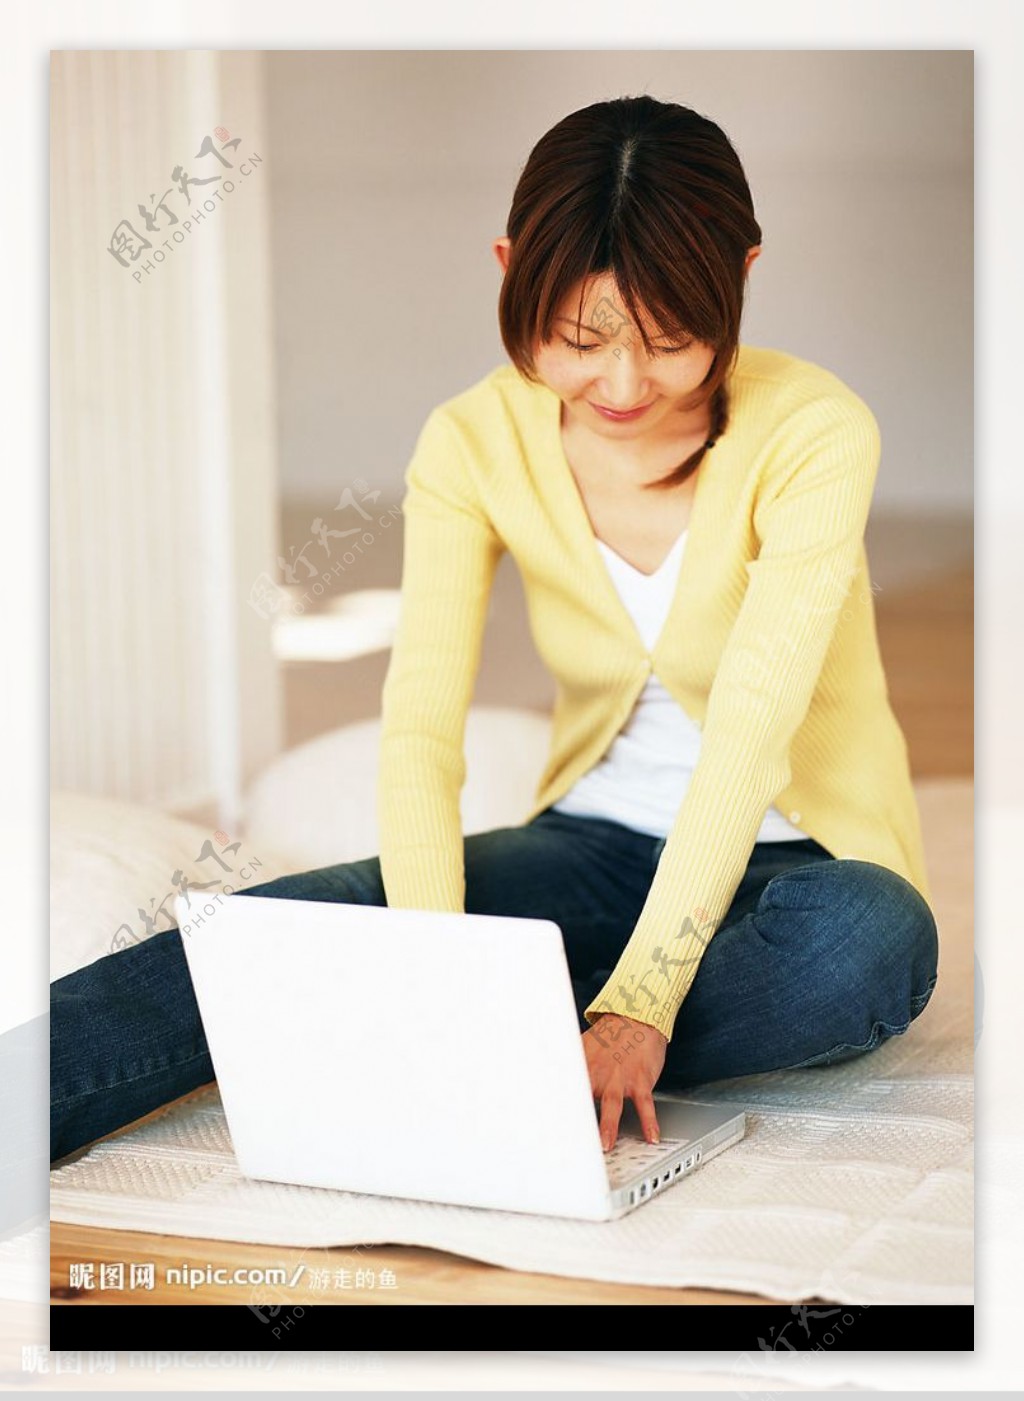 笔记本电脑上网的女孩儿图片